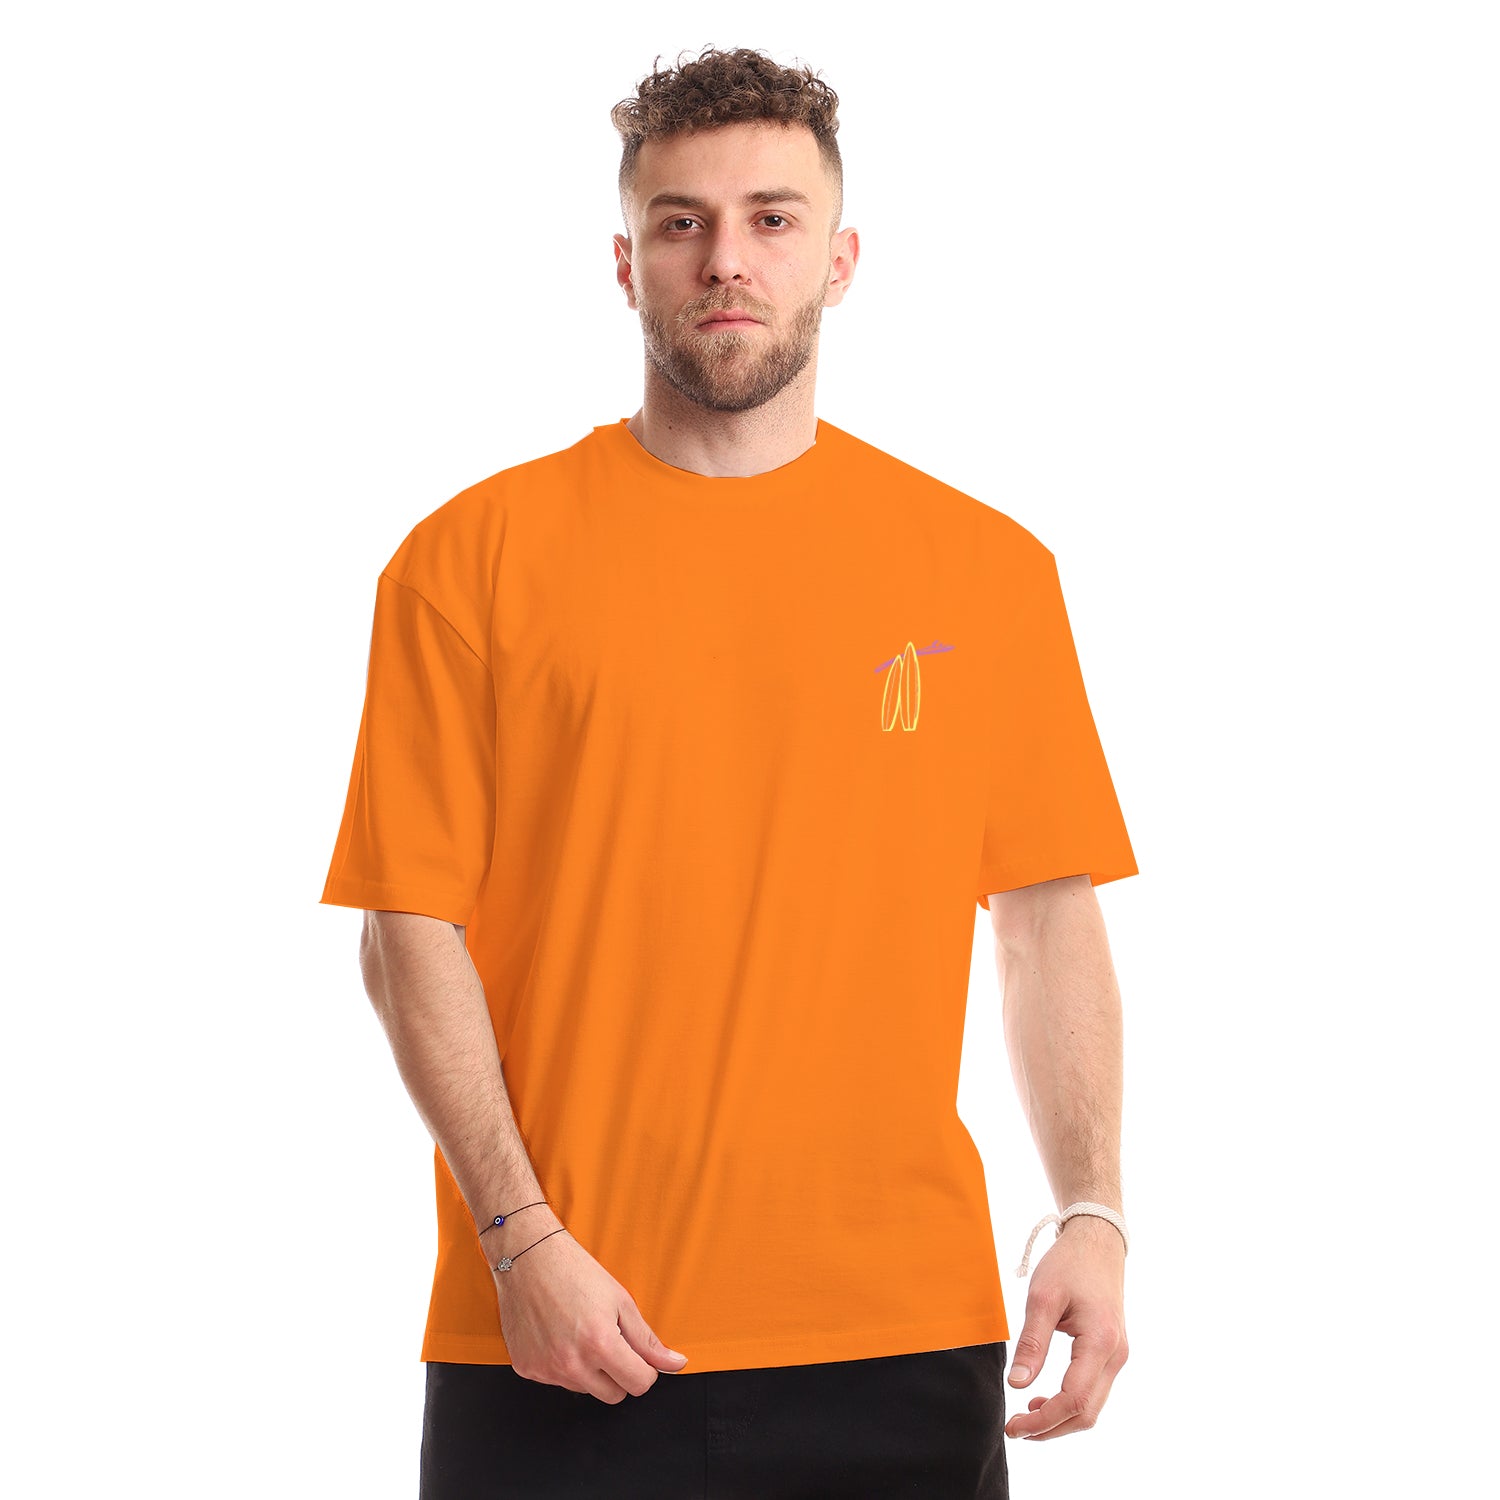 Ya Mesafer Unisex Oversized SS T-Shirt - Orange